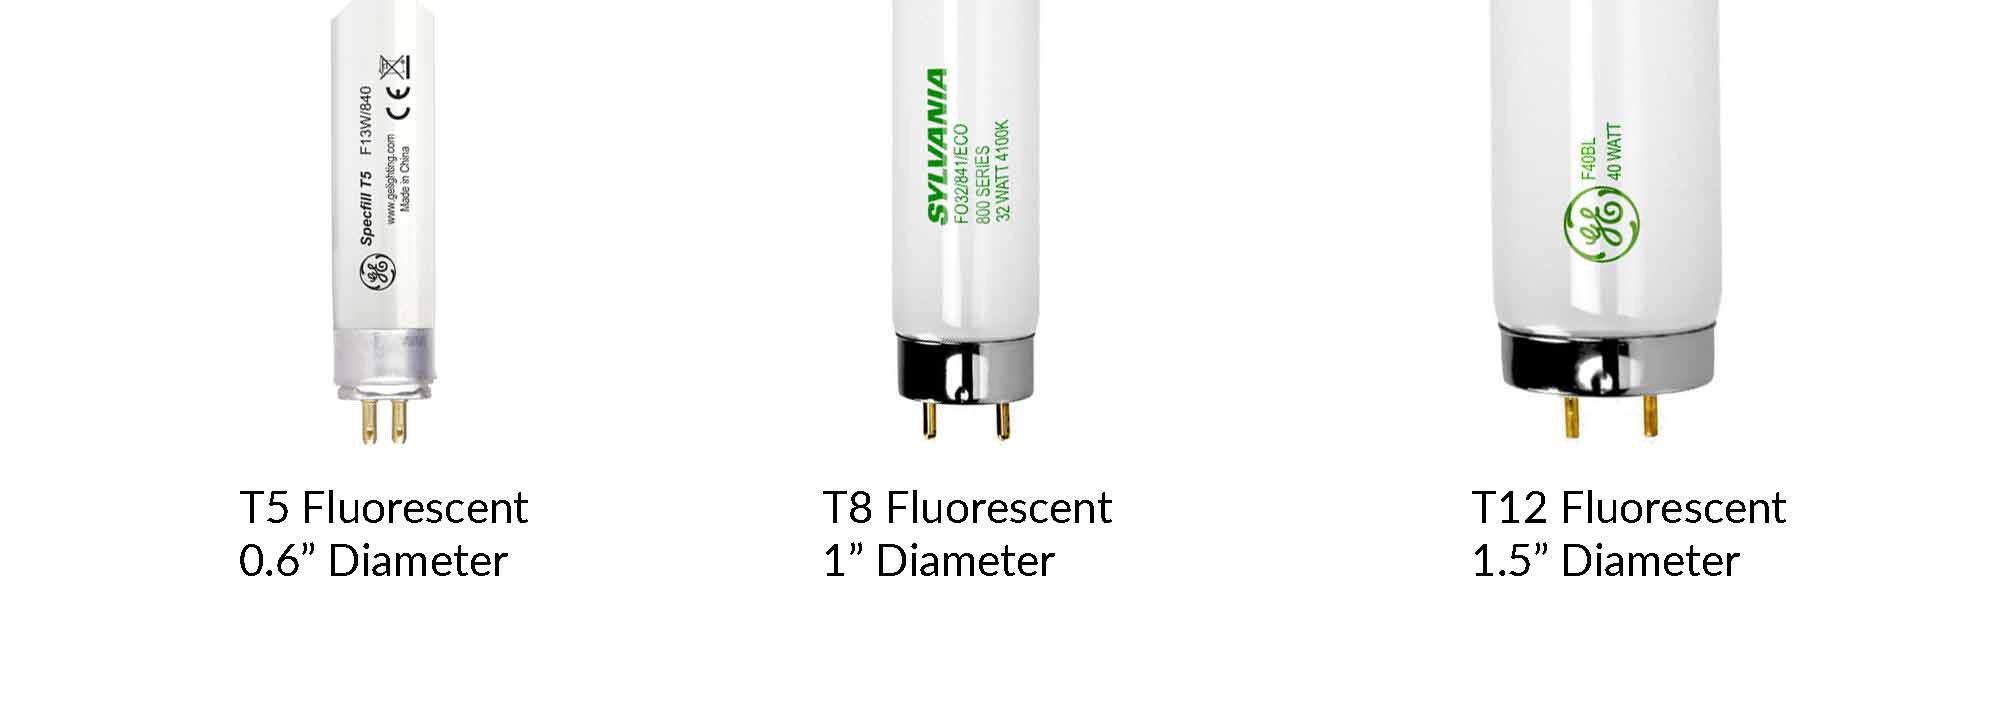 18W Dimmable T10 T5 T8 12V LED Fluorescent Tube/Light/ Lamp - China  Fluorescent Lamp, LED Tri-Proof Light